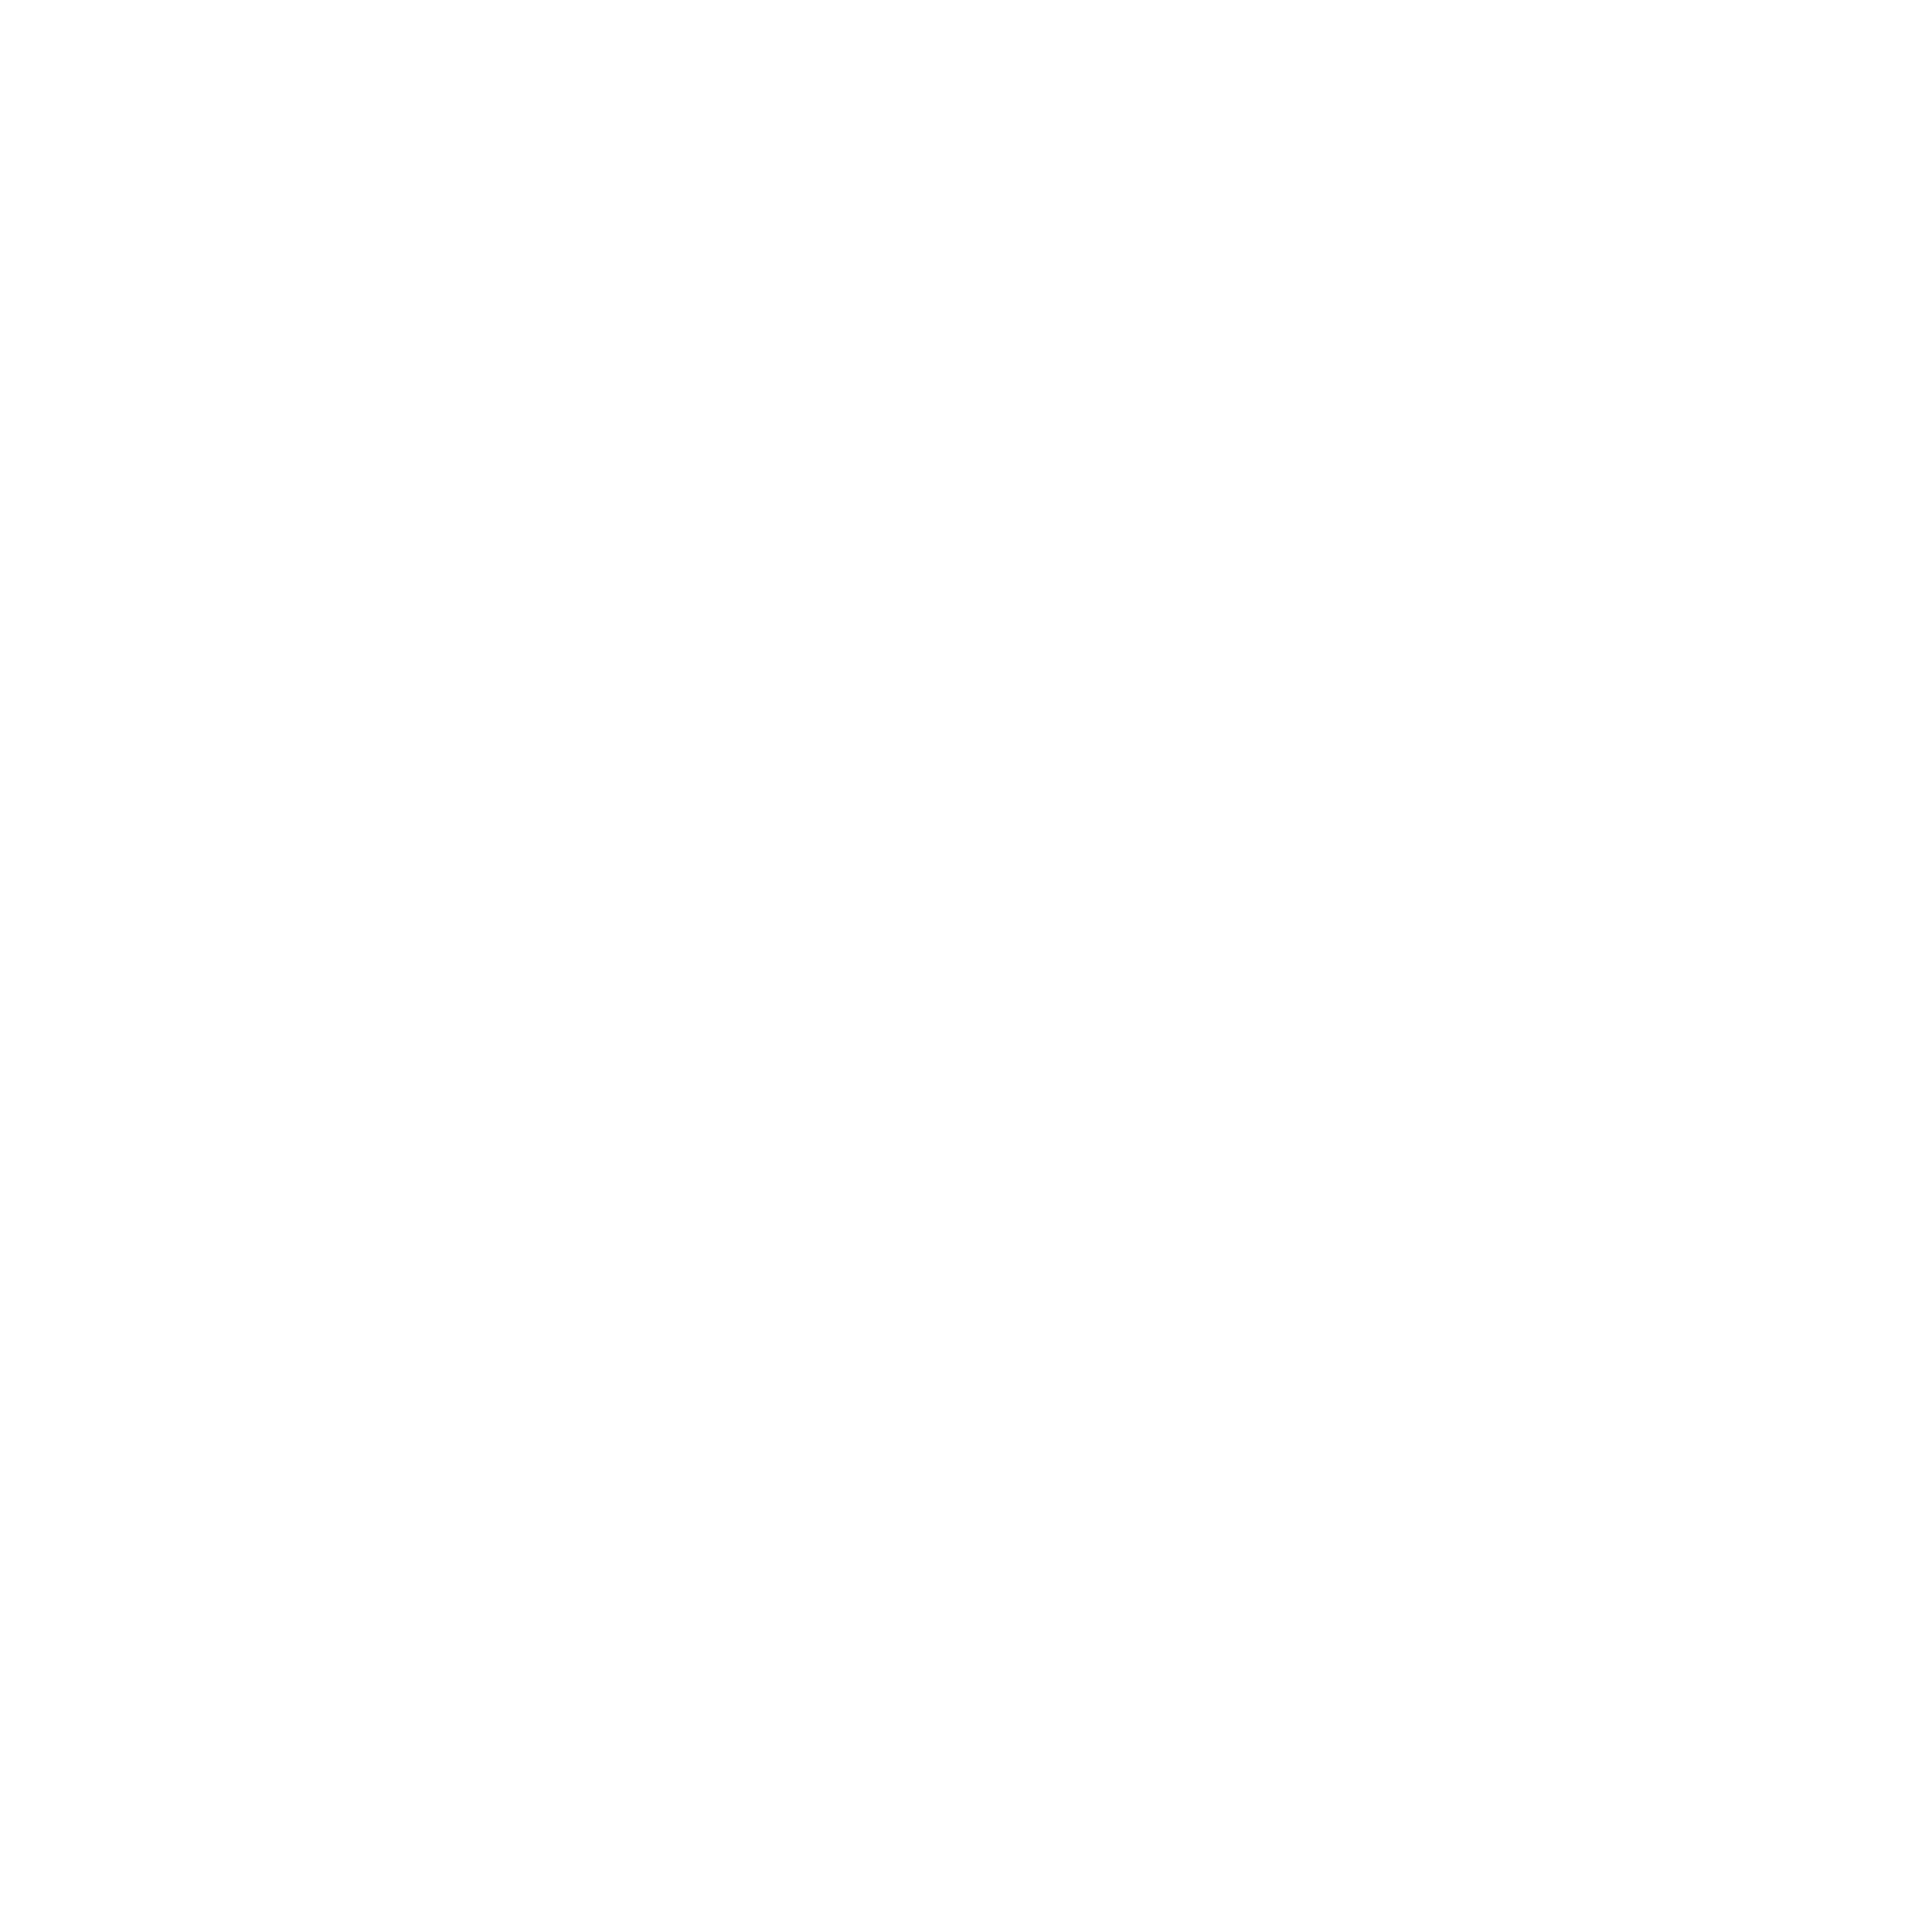 Slenders Wooncomfort